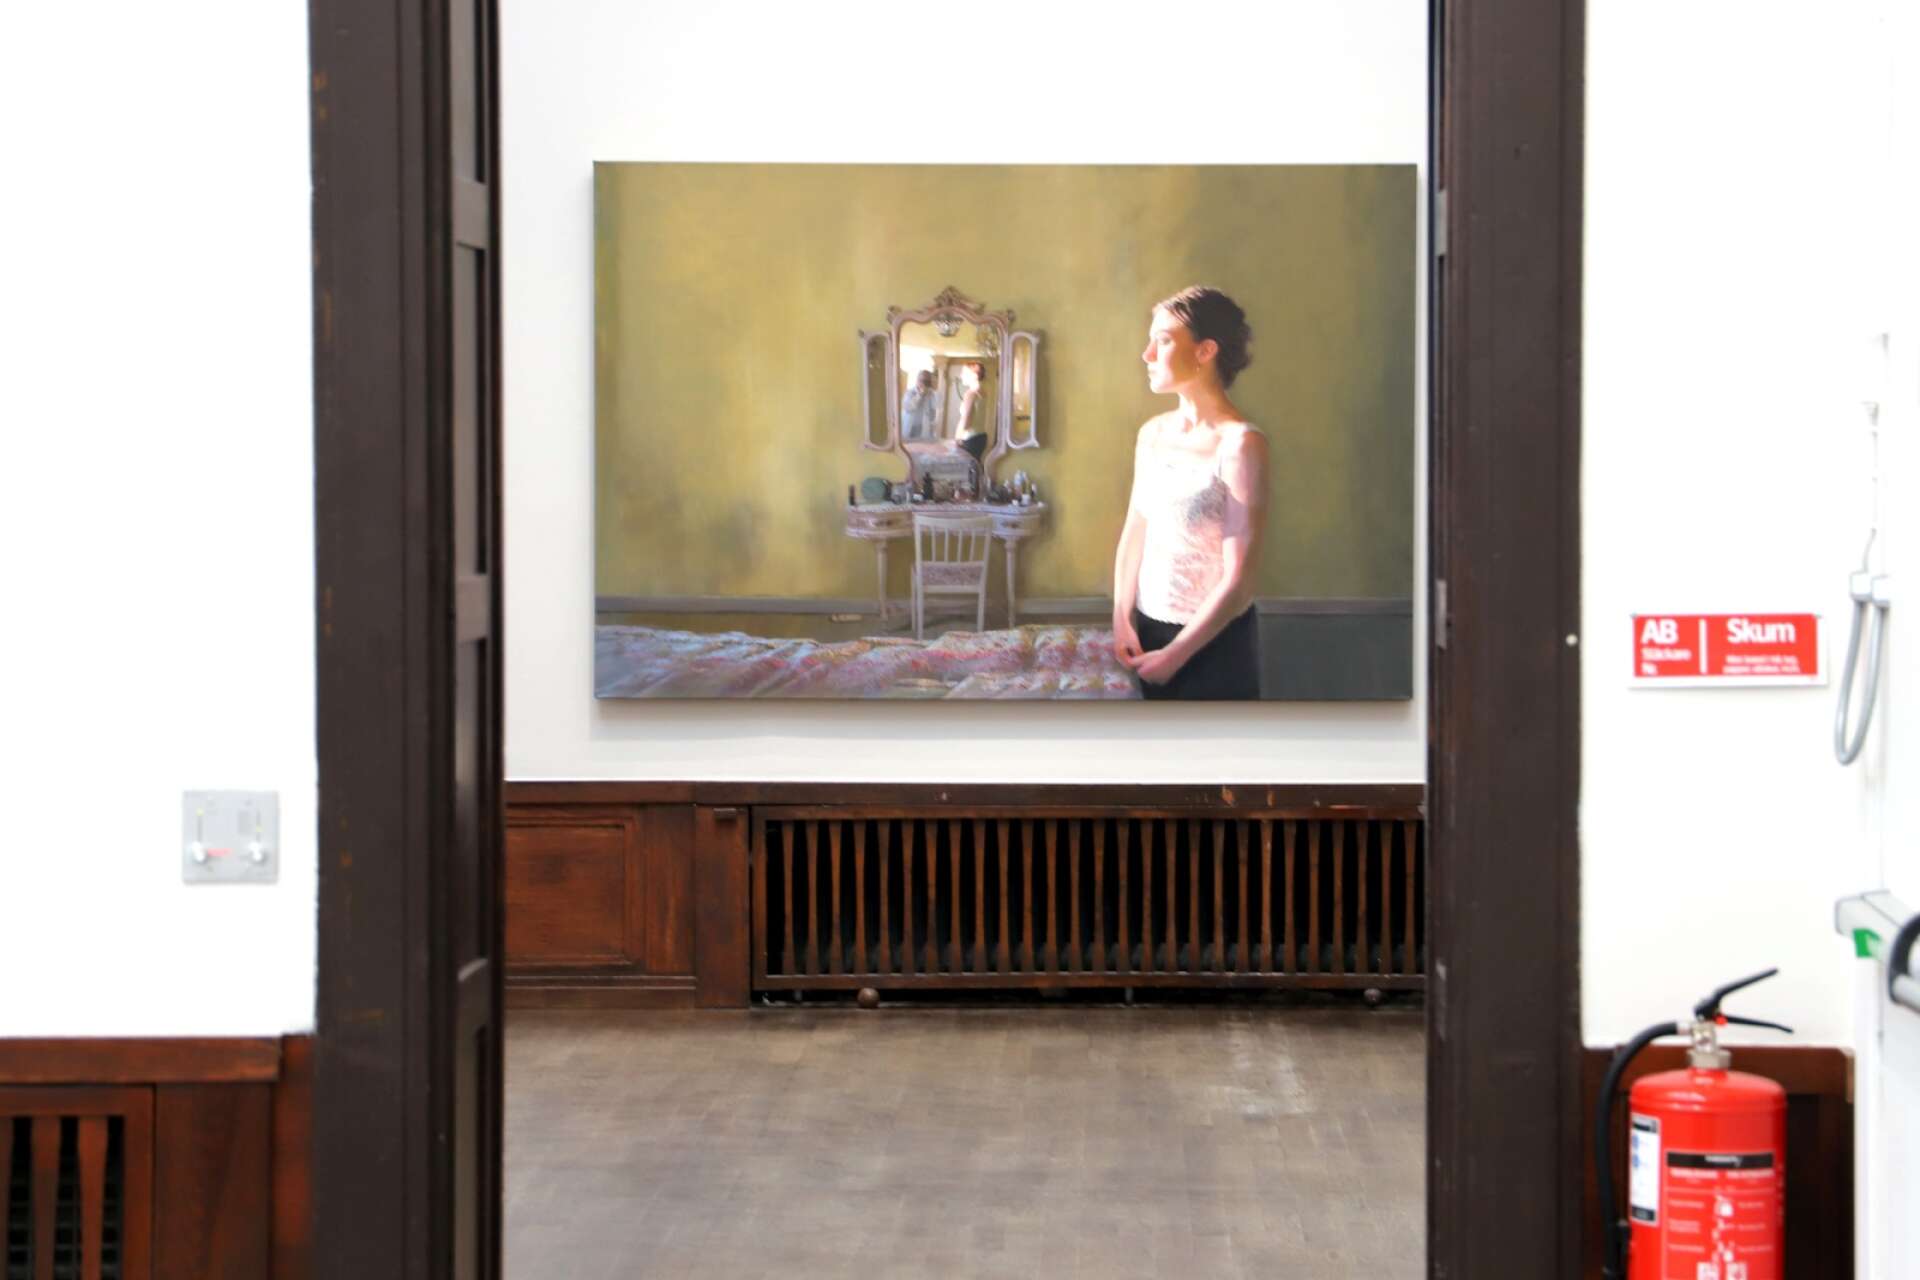 Ett av utställningsrummen fylls av bilder med speglar, ett tema som Karin Broos har mörka minnen till.